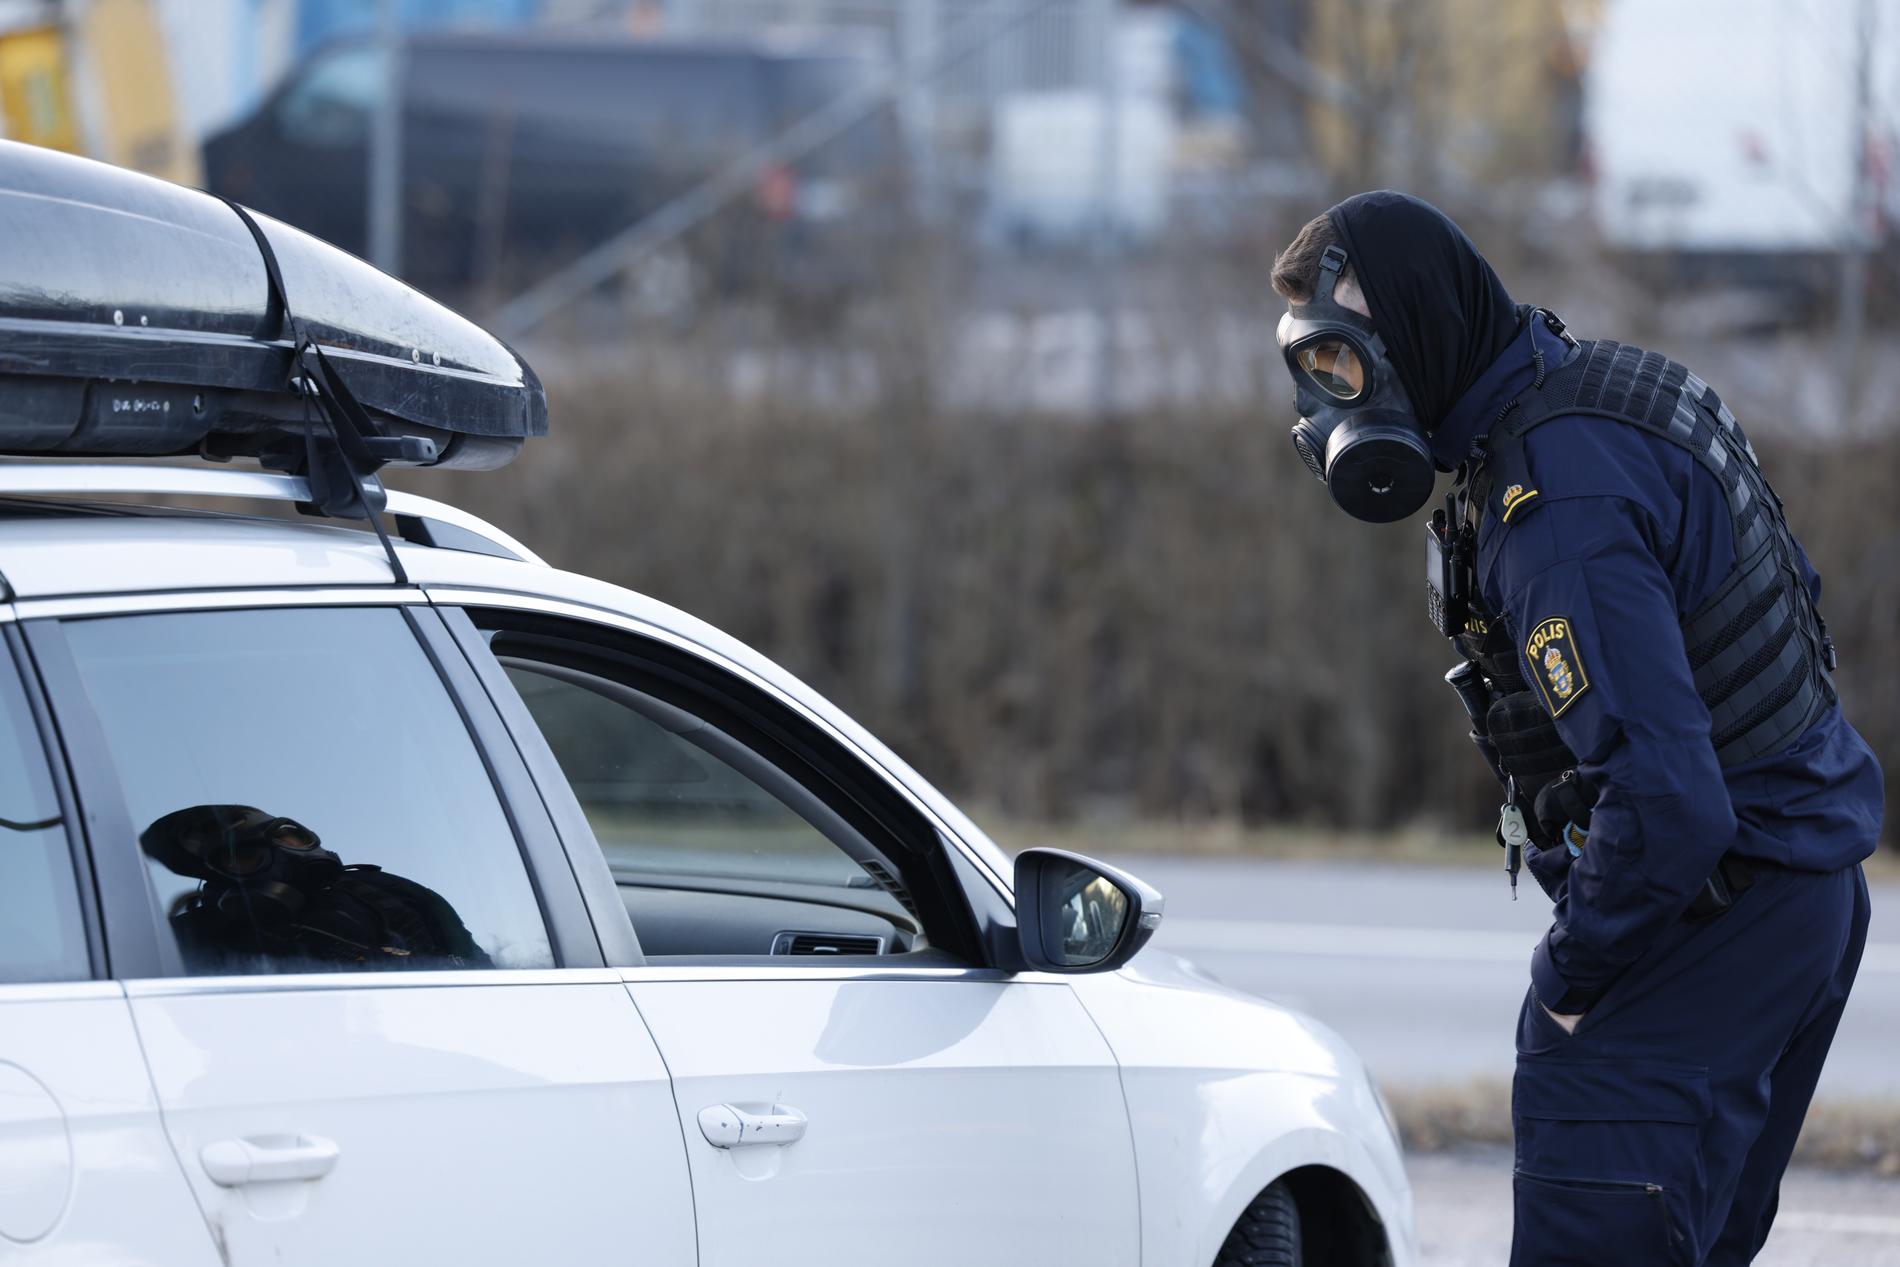 Polis och räddningstjänst larmades till Säkerhetspolisens högkvarter i Solna på grund av en konstig doft i lokalerna.